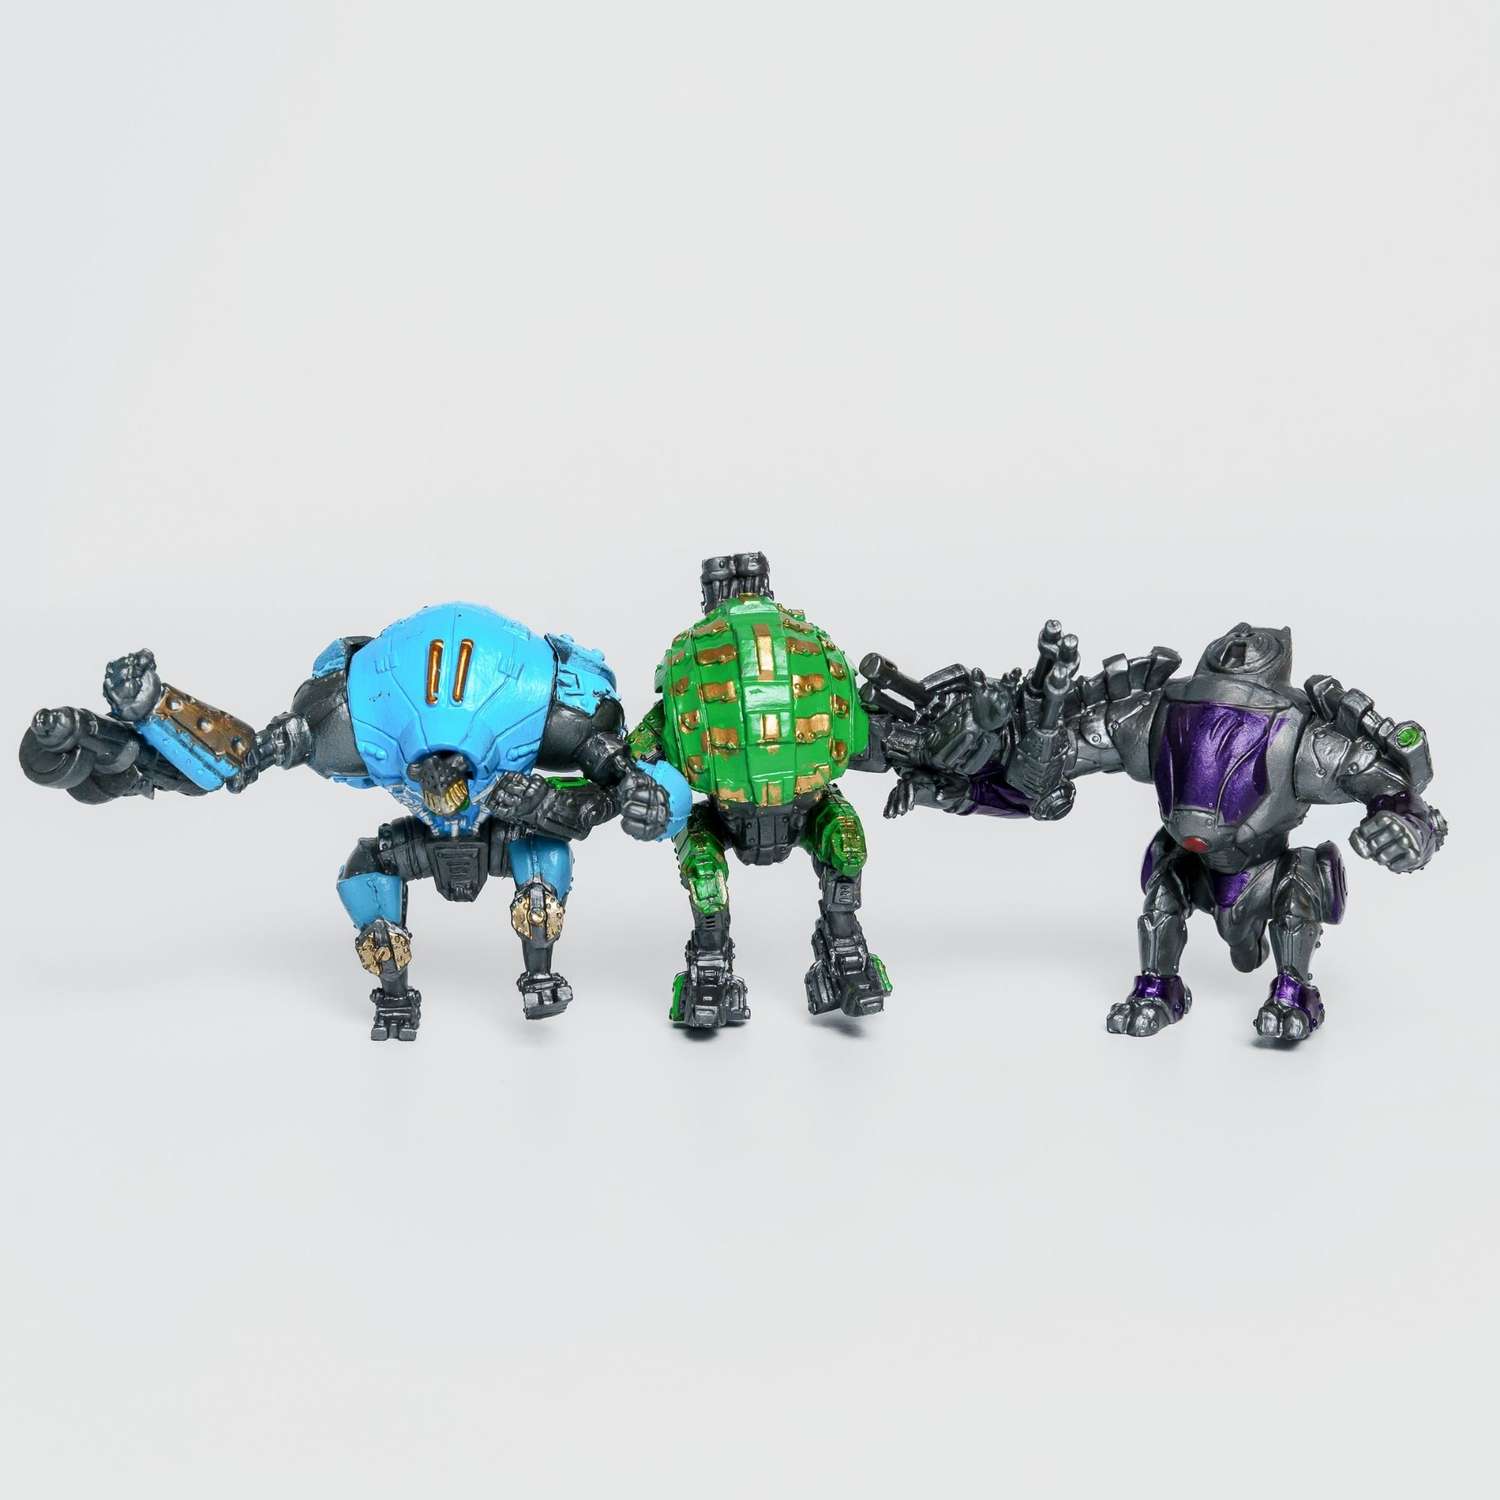 Роботы CyberCode 3 фигурки игрушки для детей развивающие пластиковые коллекционные интересные. 8см - фото 6